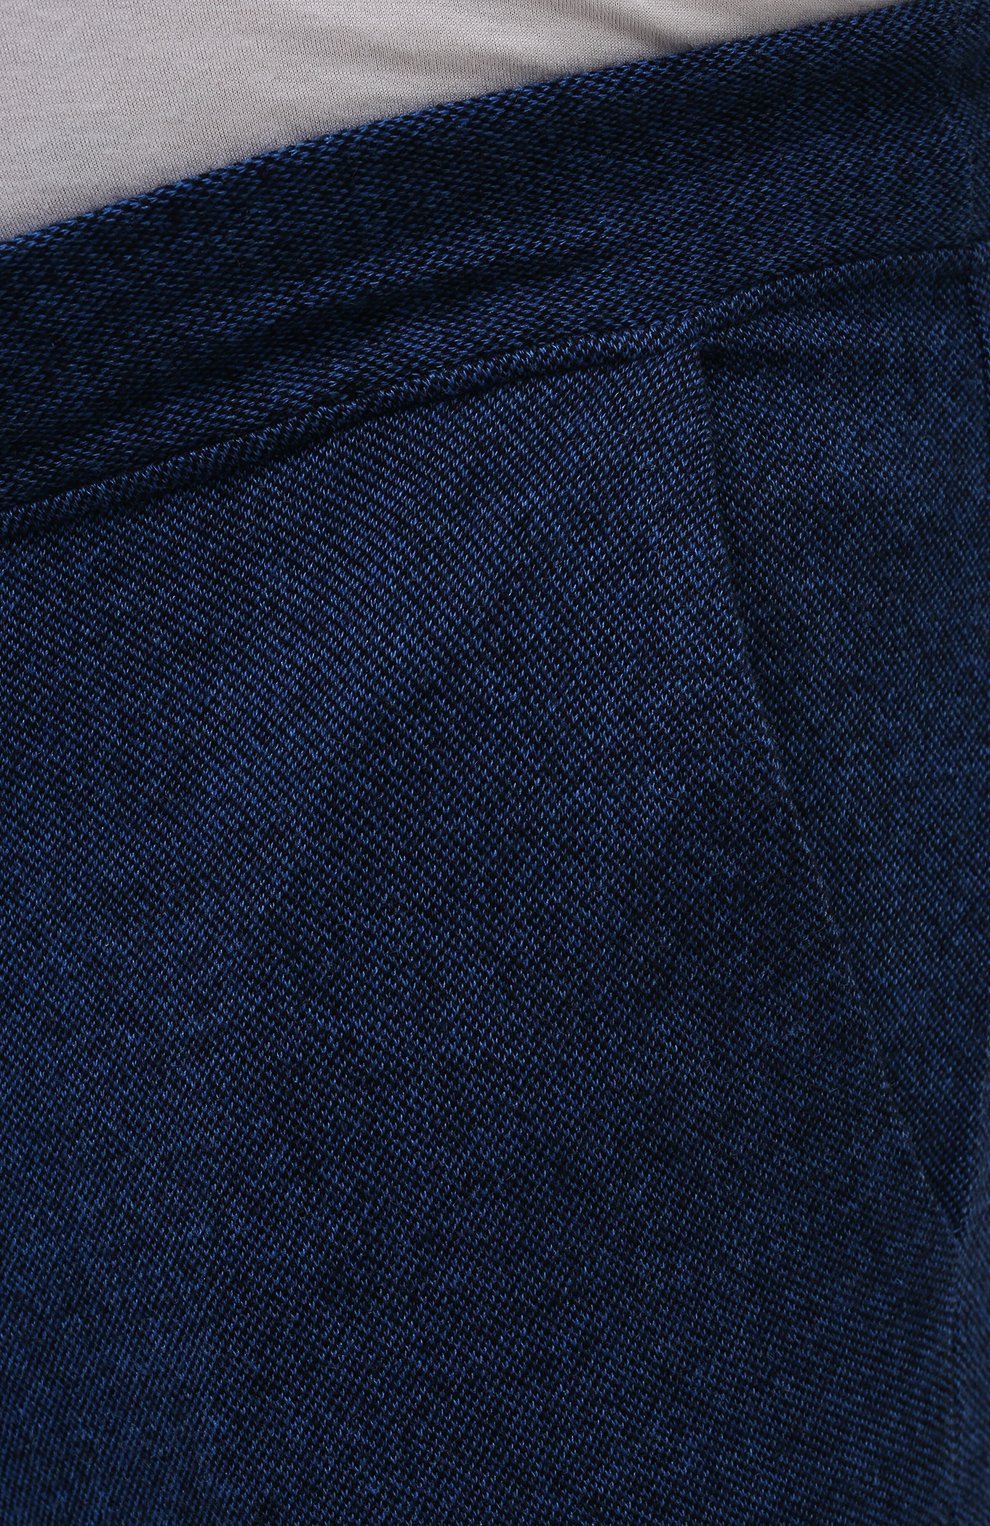 Мужские кашемировые брюки ZILLI SPORT темно-синего цвета, арт. MBW-J0M02-WS000/0001_2 | Фото 5 (Материал внешний: Шерсть, Кашемир; Длина (брюки, джинсы): Стандартные; Случай: Повседневный; Кросс-КТ: Спорт; Стили: Спорт-шик; Материал подклада: Шелк)